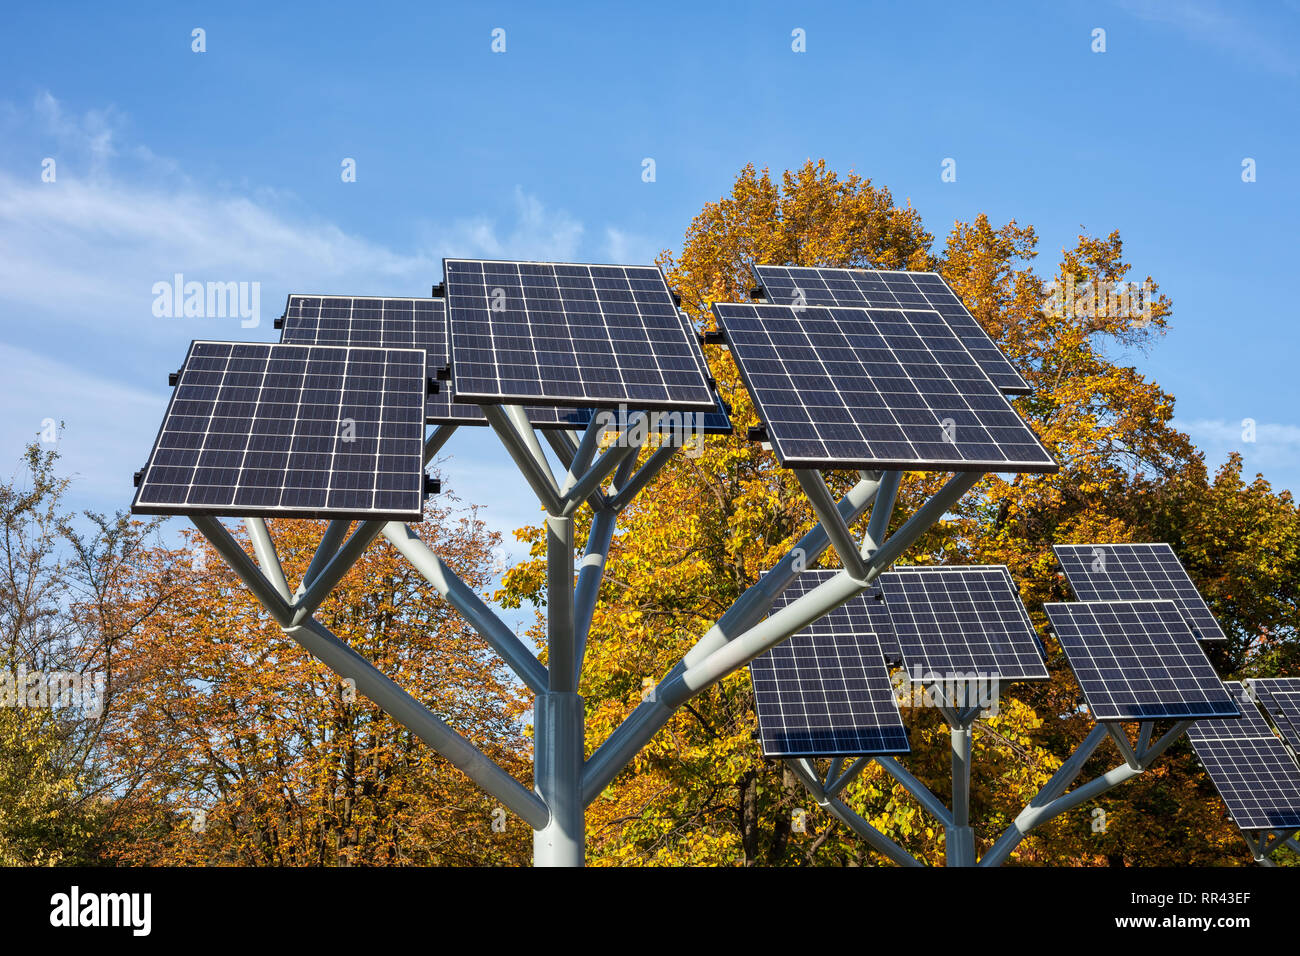 Sonnenkollektoren auf einem Ständer im City Park, Photovoltaik-Module,  nachhaltige erneuerbare Energiequelle Stockfotografie - Alamy